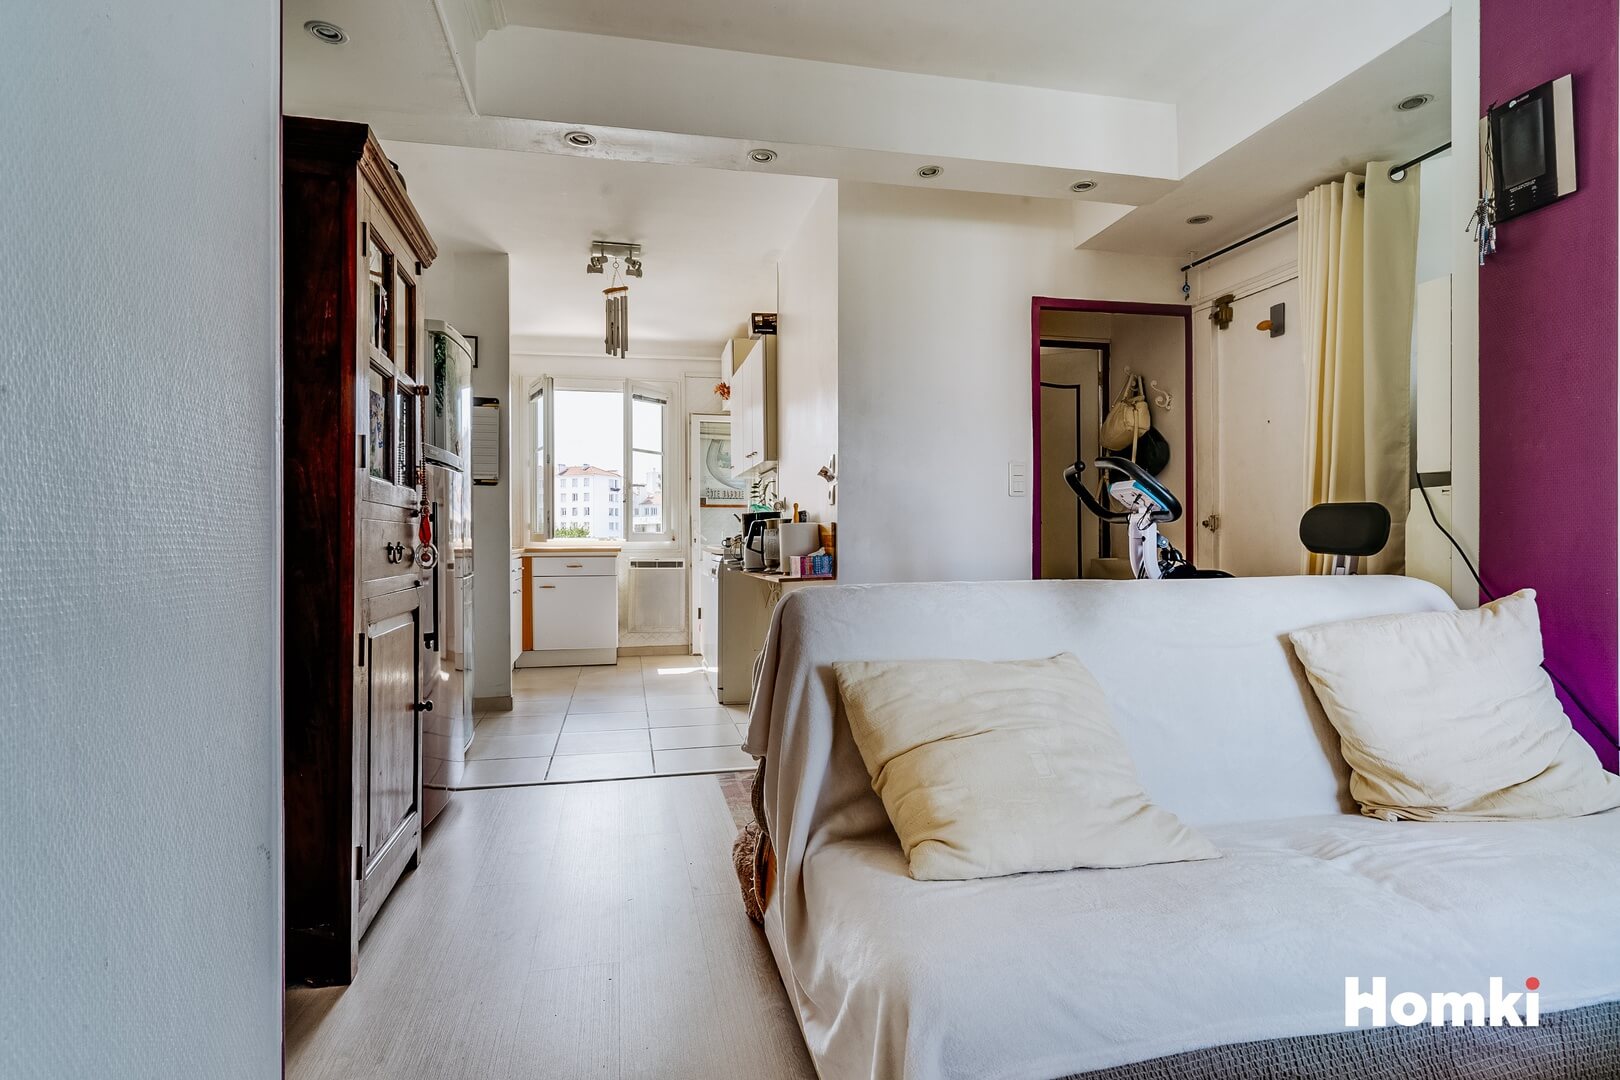 Homki - Vente Appartement  de 66.0 m² à Marseille 13004